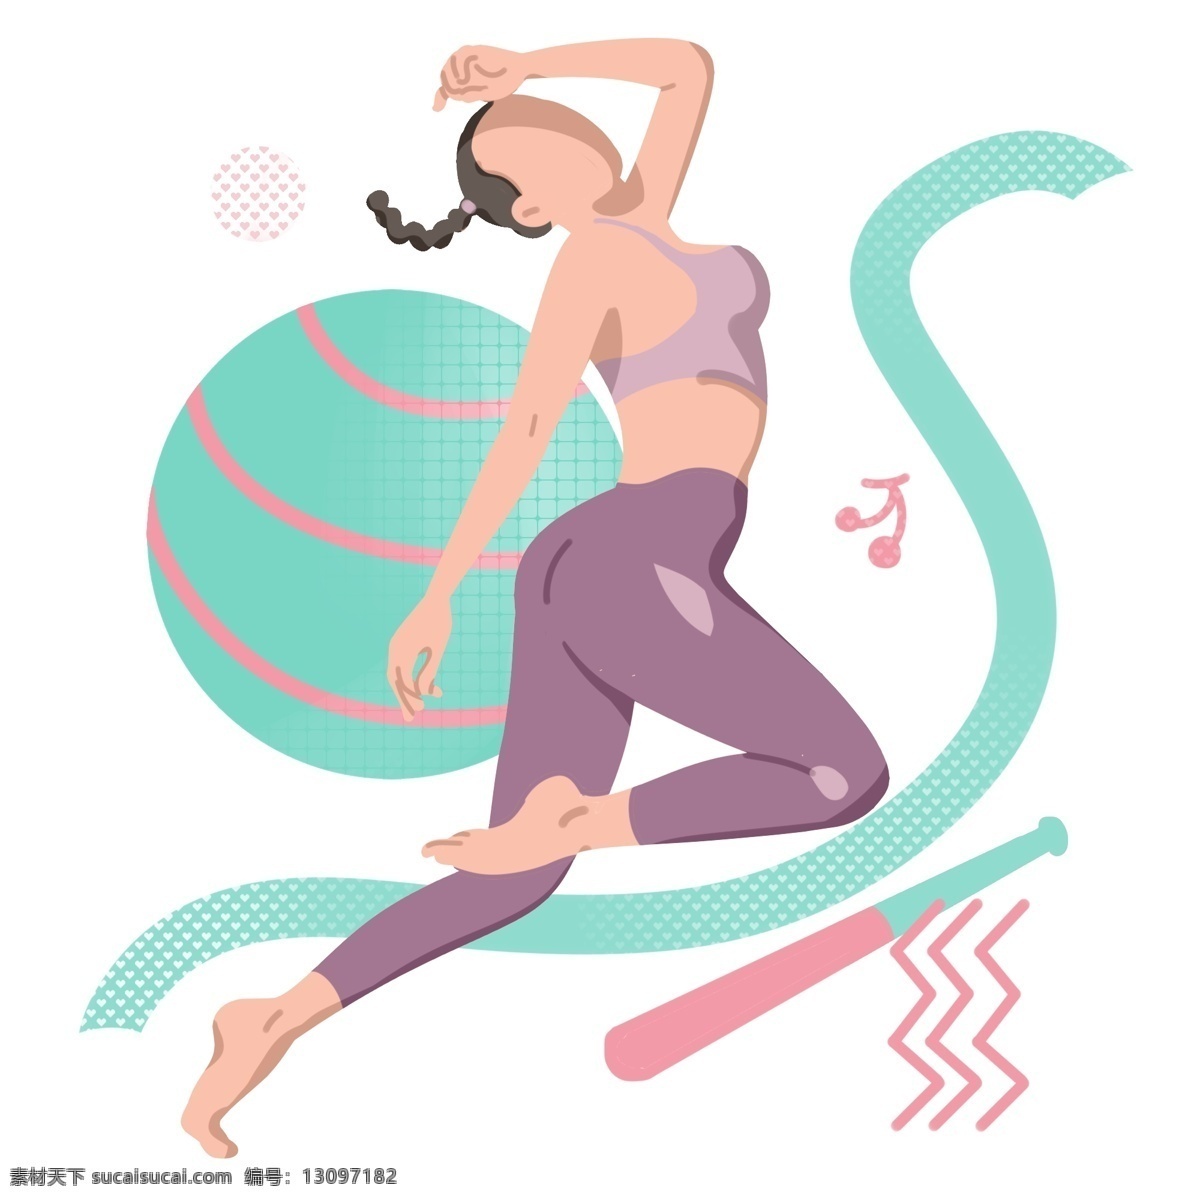 瑜伽 运动 卡通 插画 瑜伽的运动 卡通插画 漂亮的女孩 健身运动 活动筋骨 体育项目 强身健体